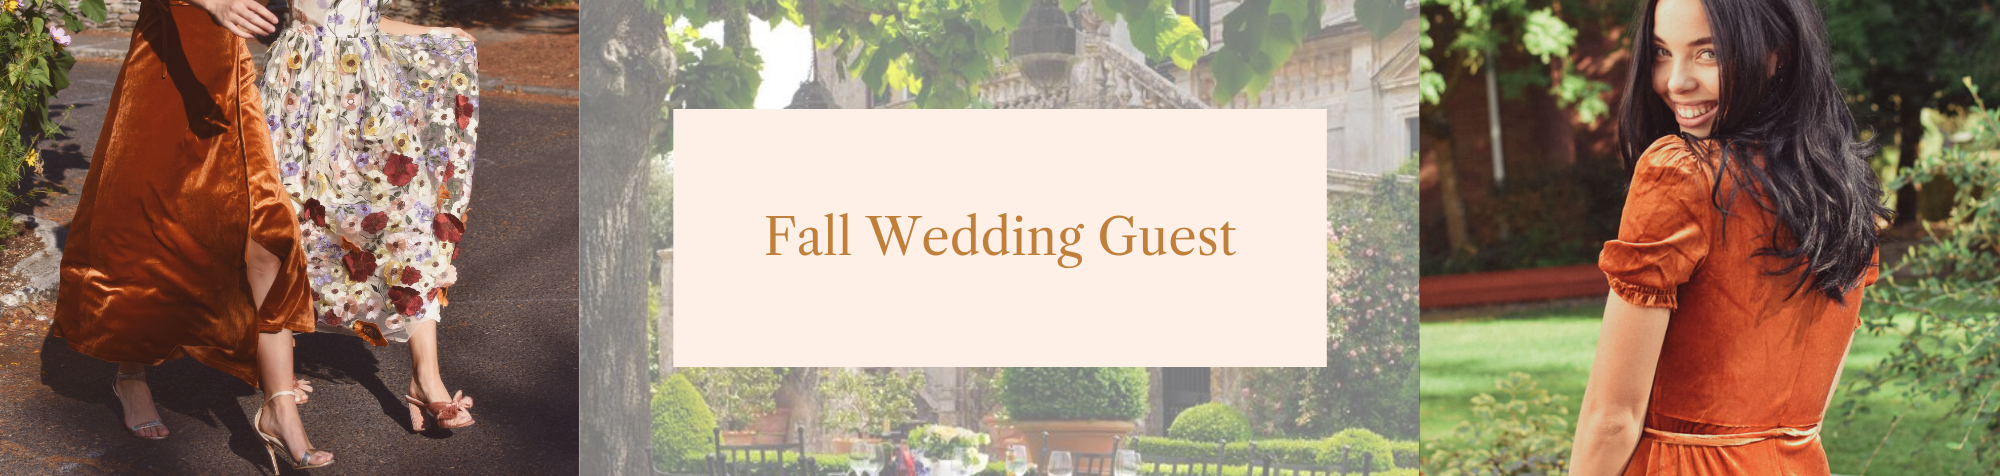 Fall Wedding Guest